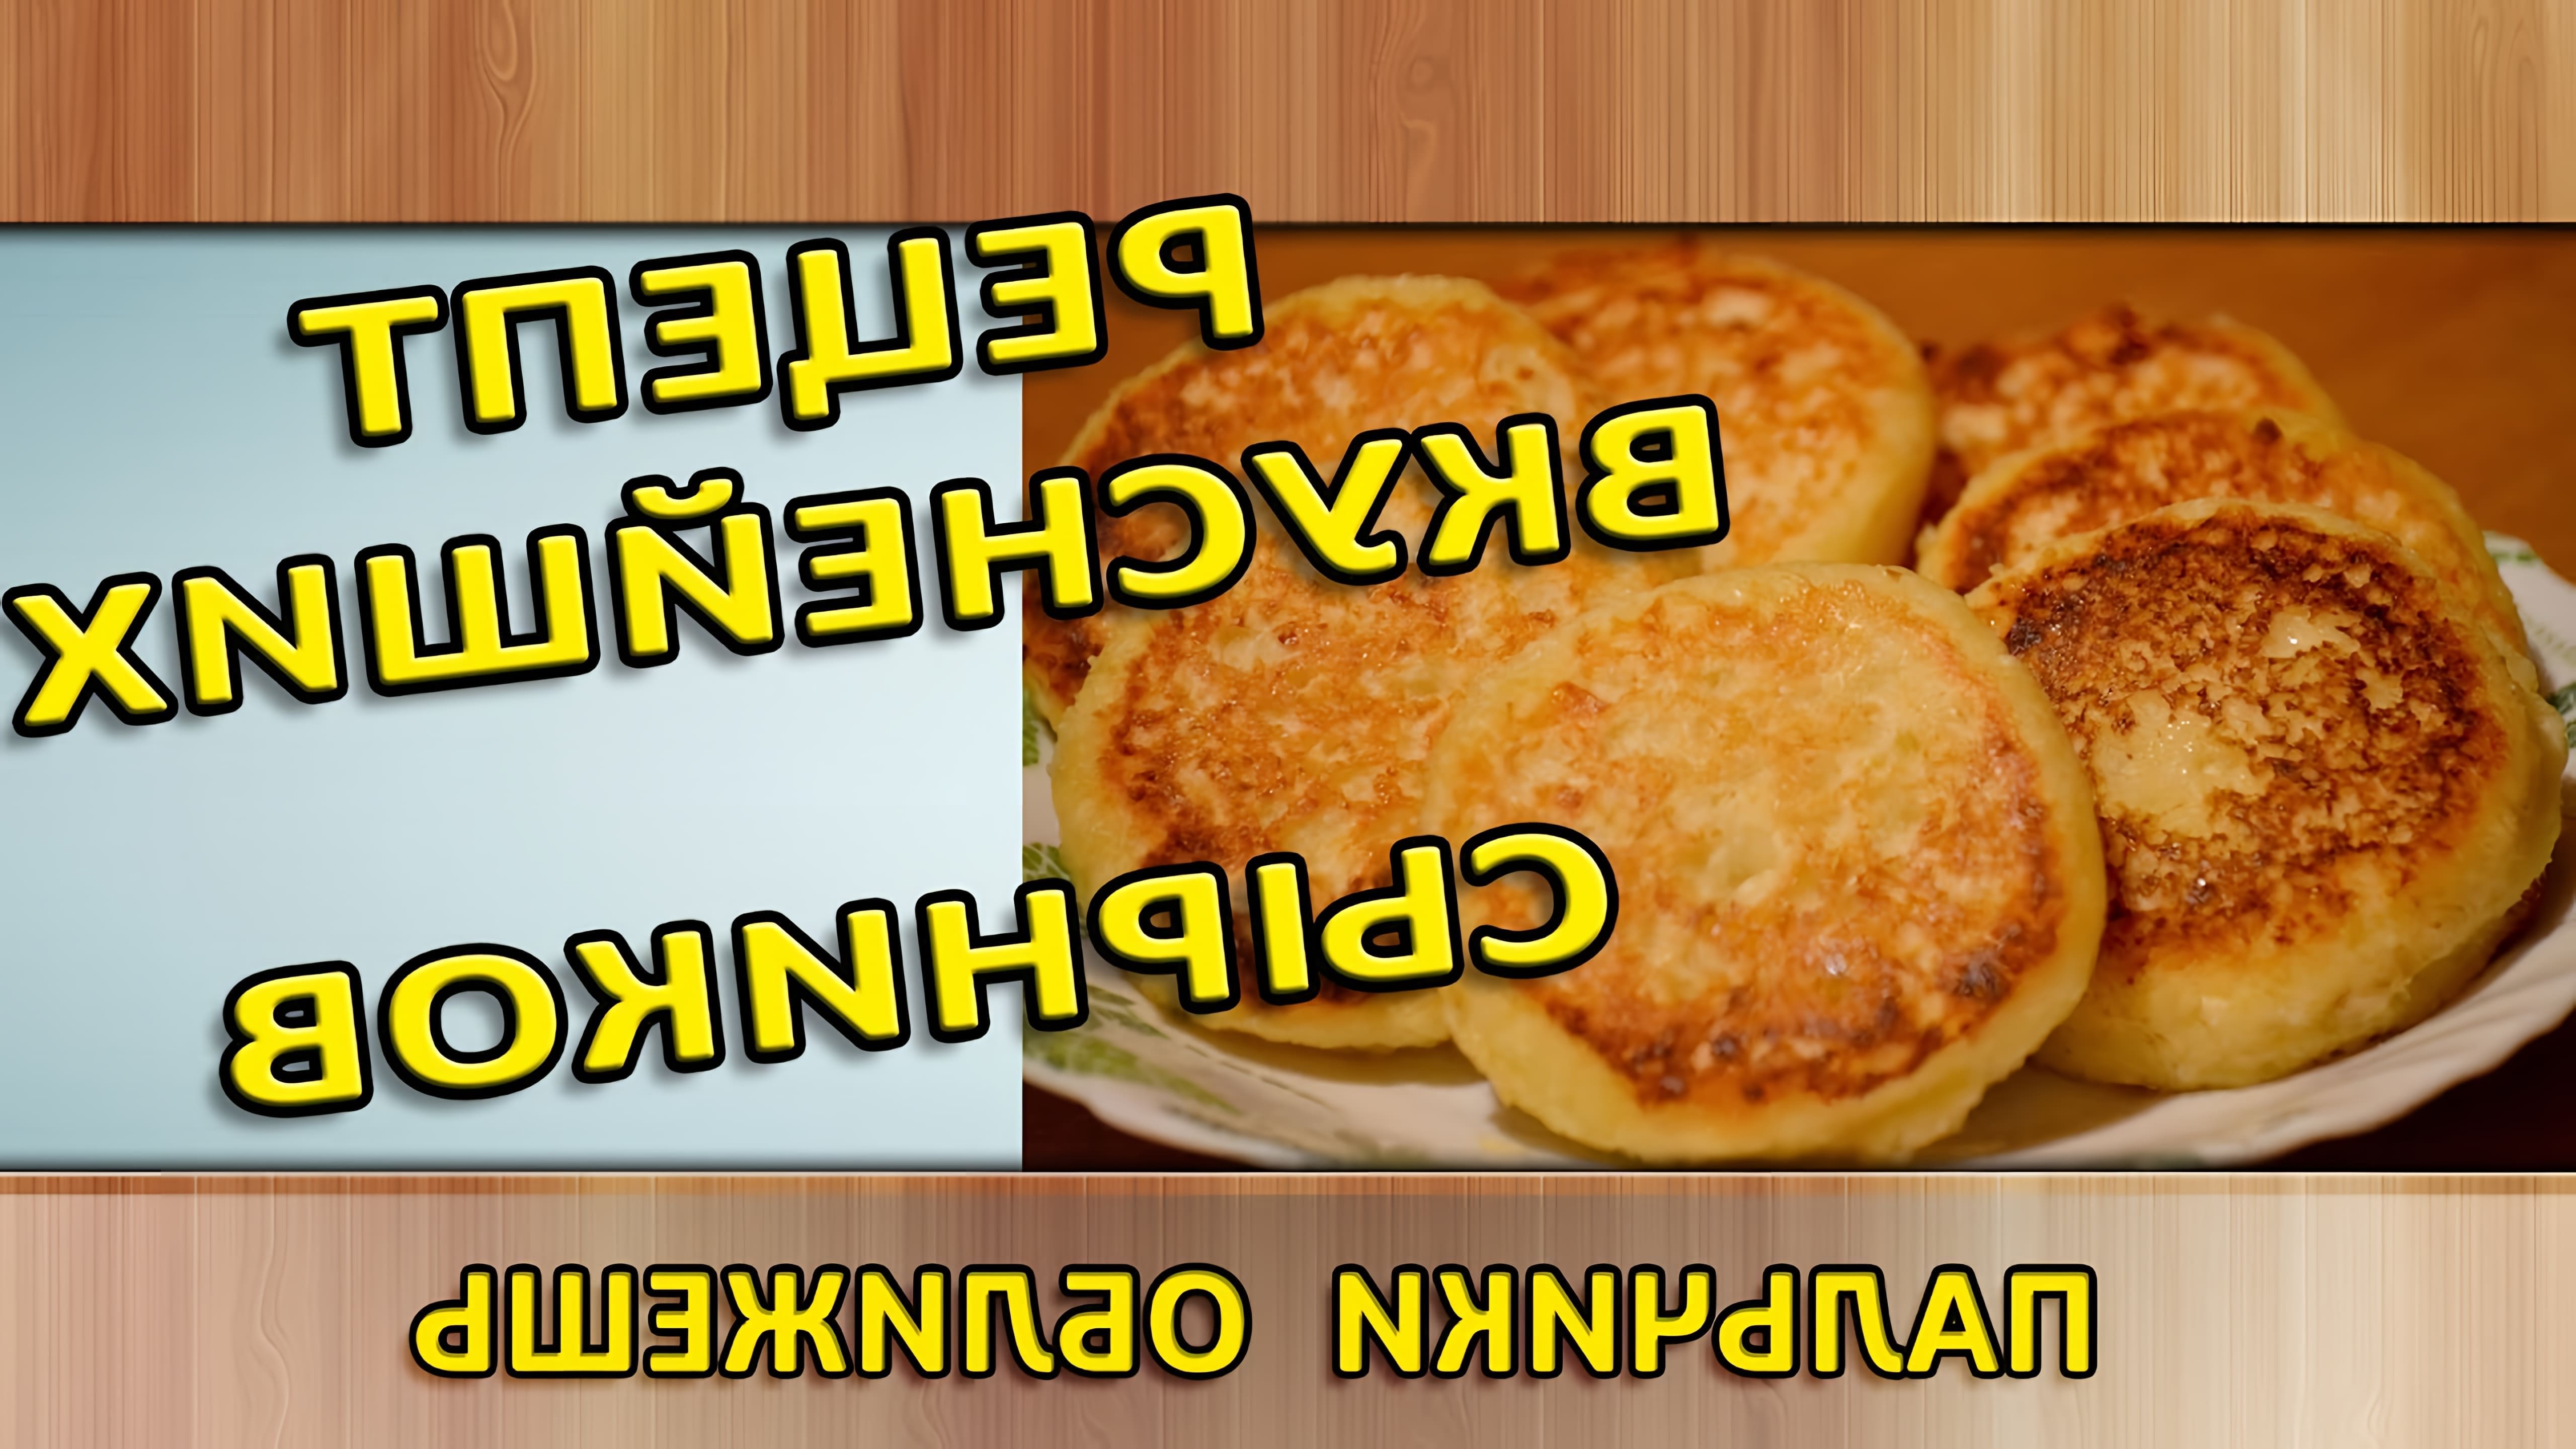 В этом видео-ролике будет показан рецепт приготовления вкусных сырников из творога на сковороде